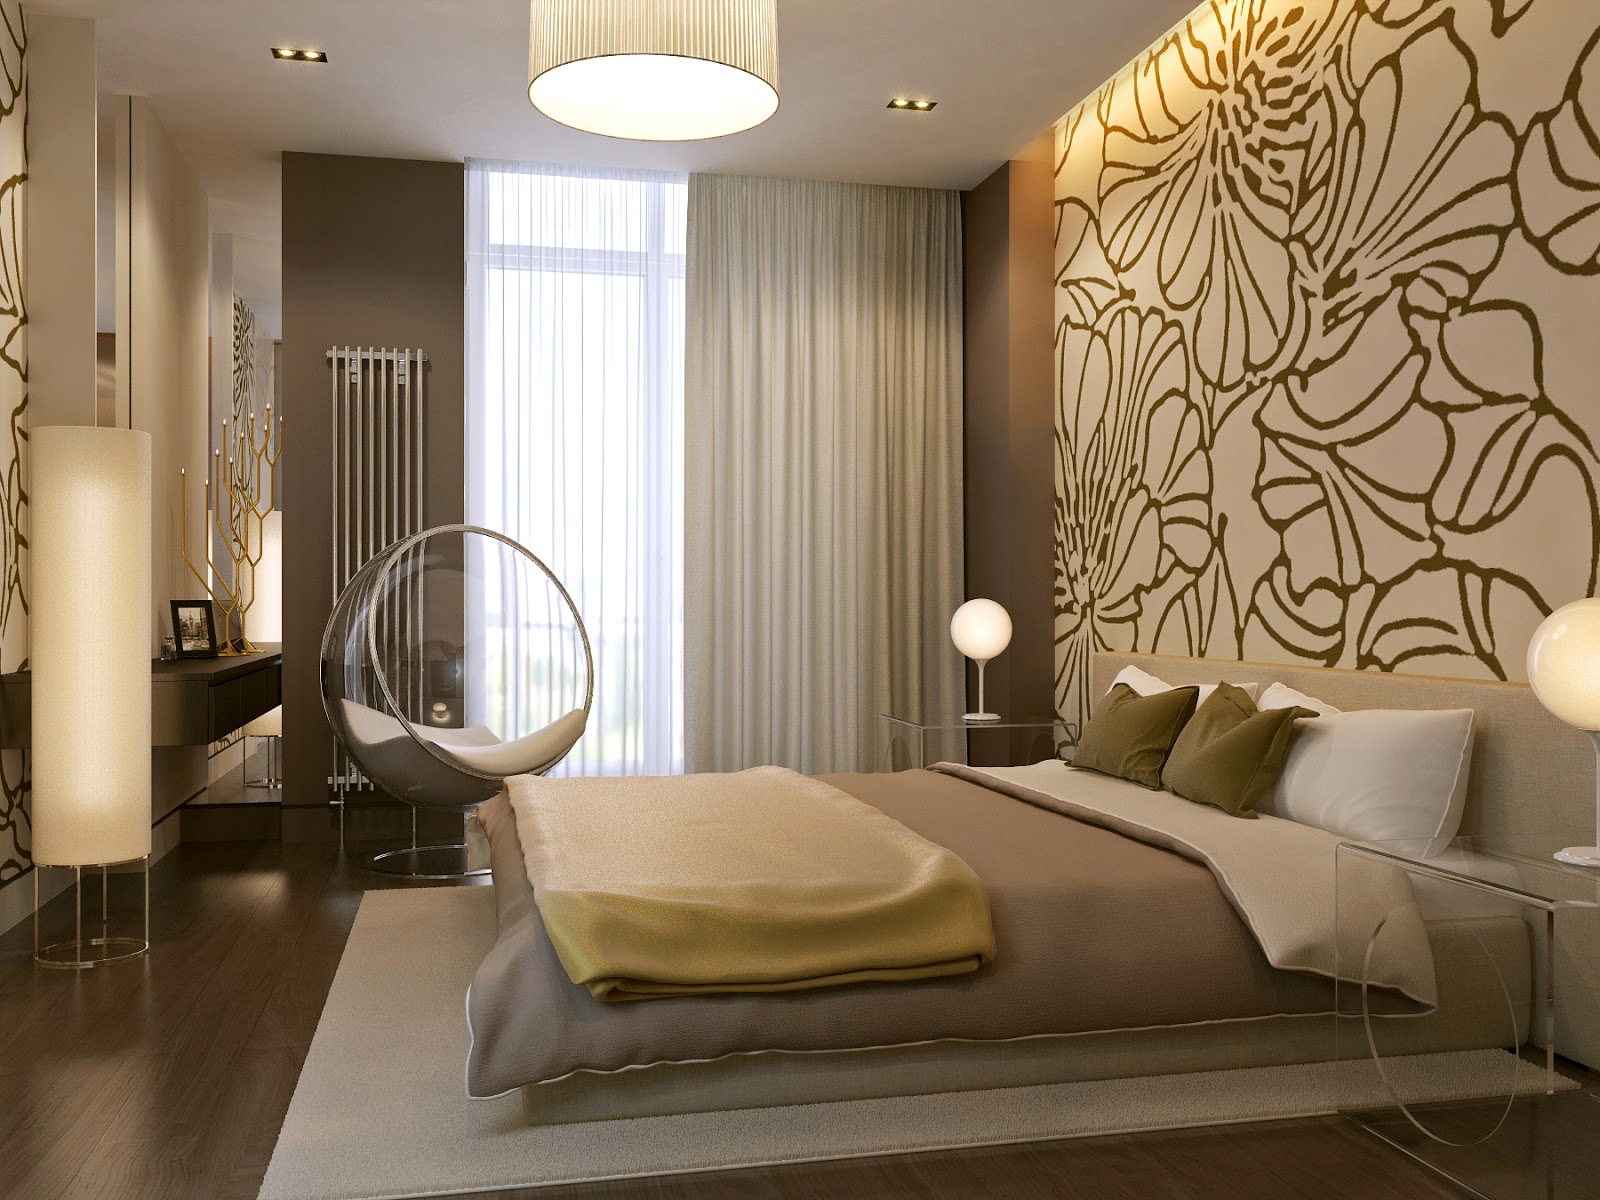 Красивый дизайн спальни — фото идеи интерьера спальни